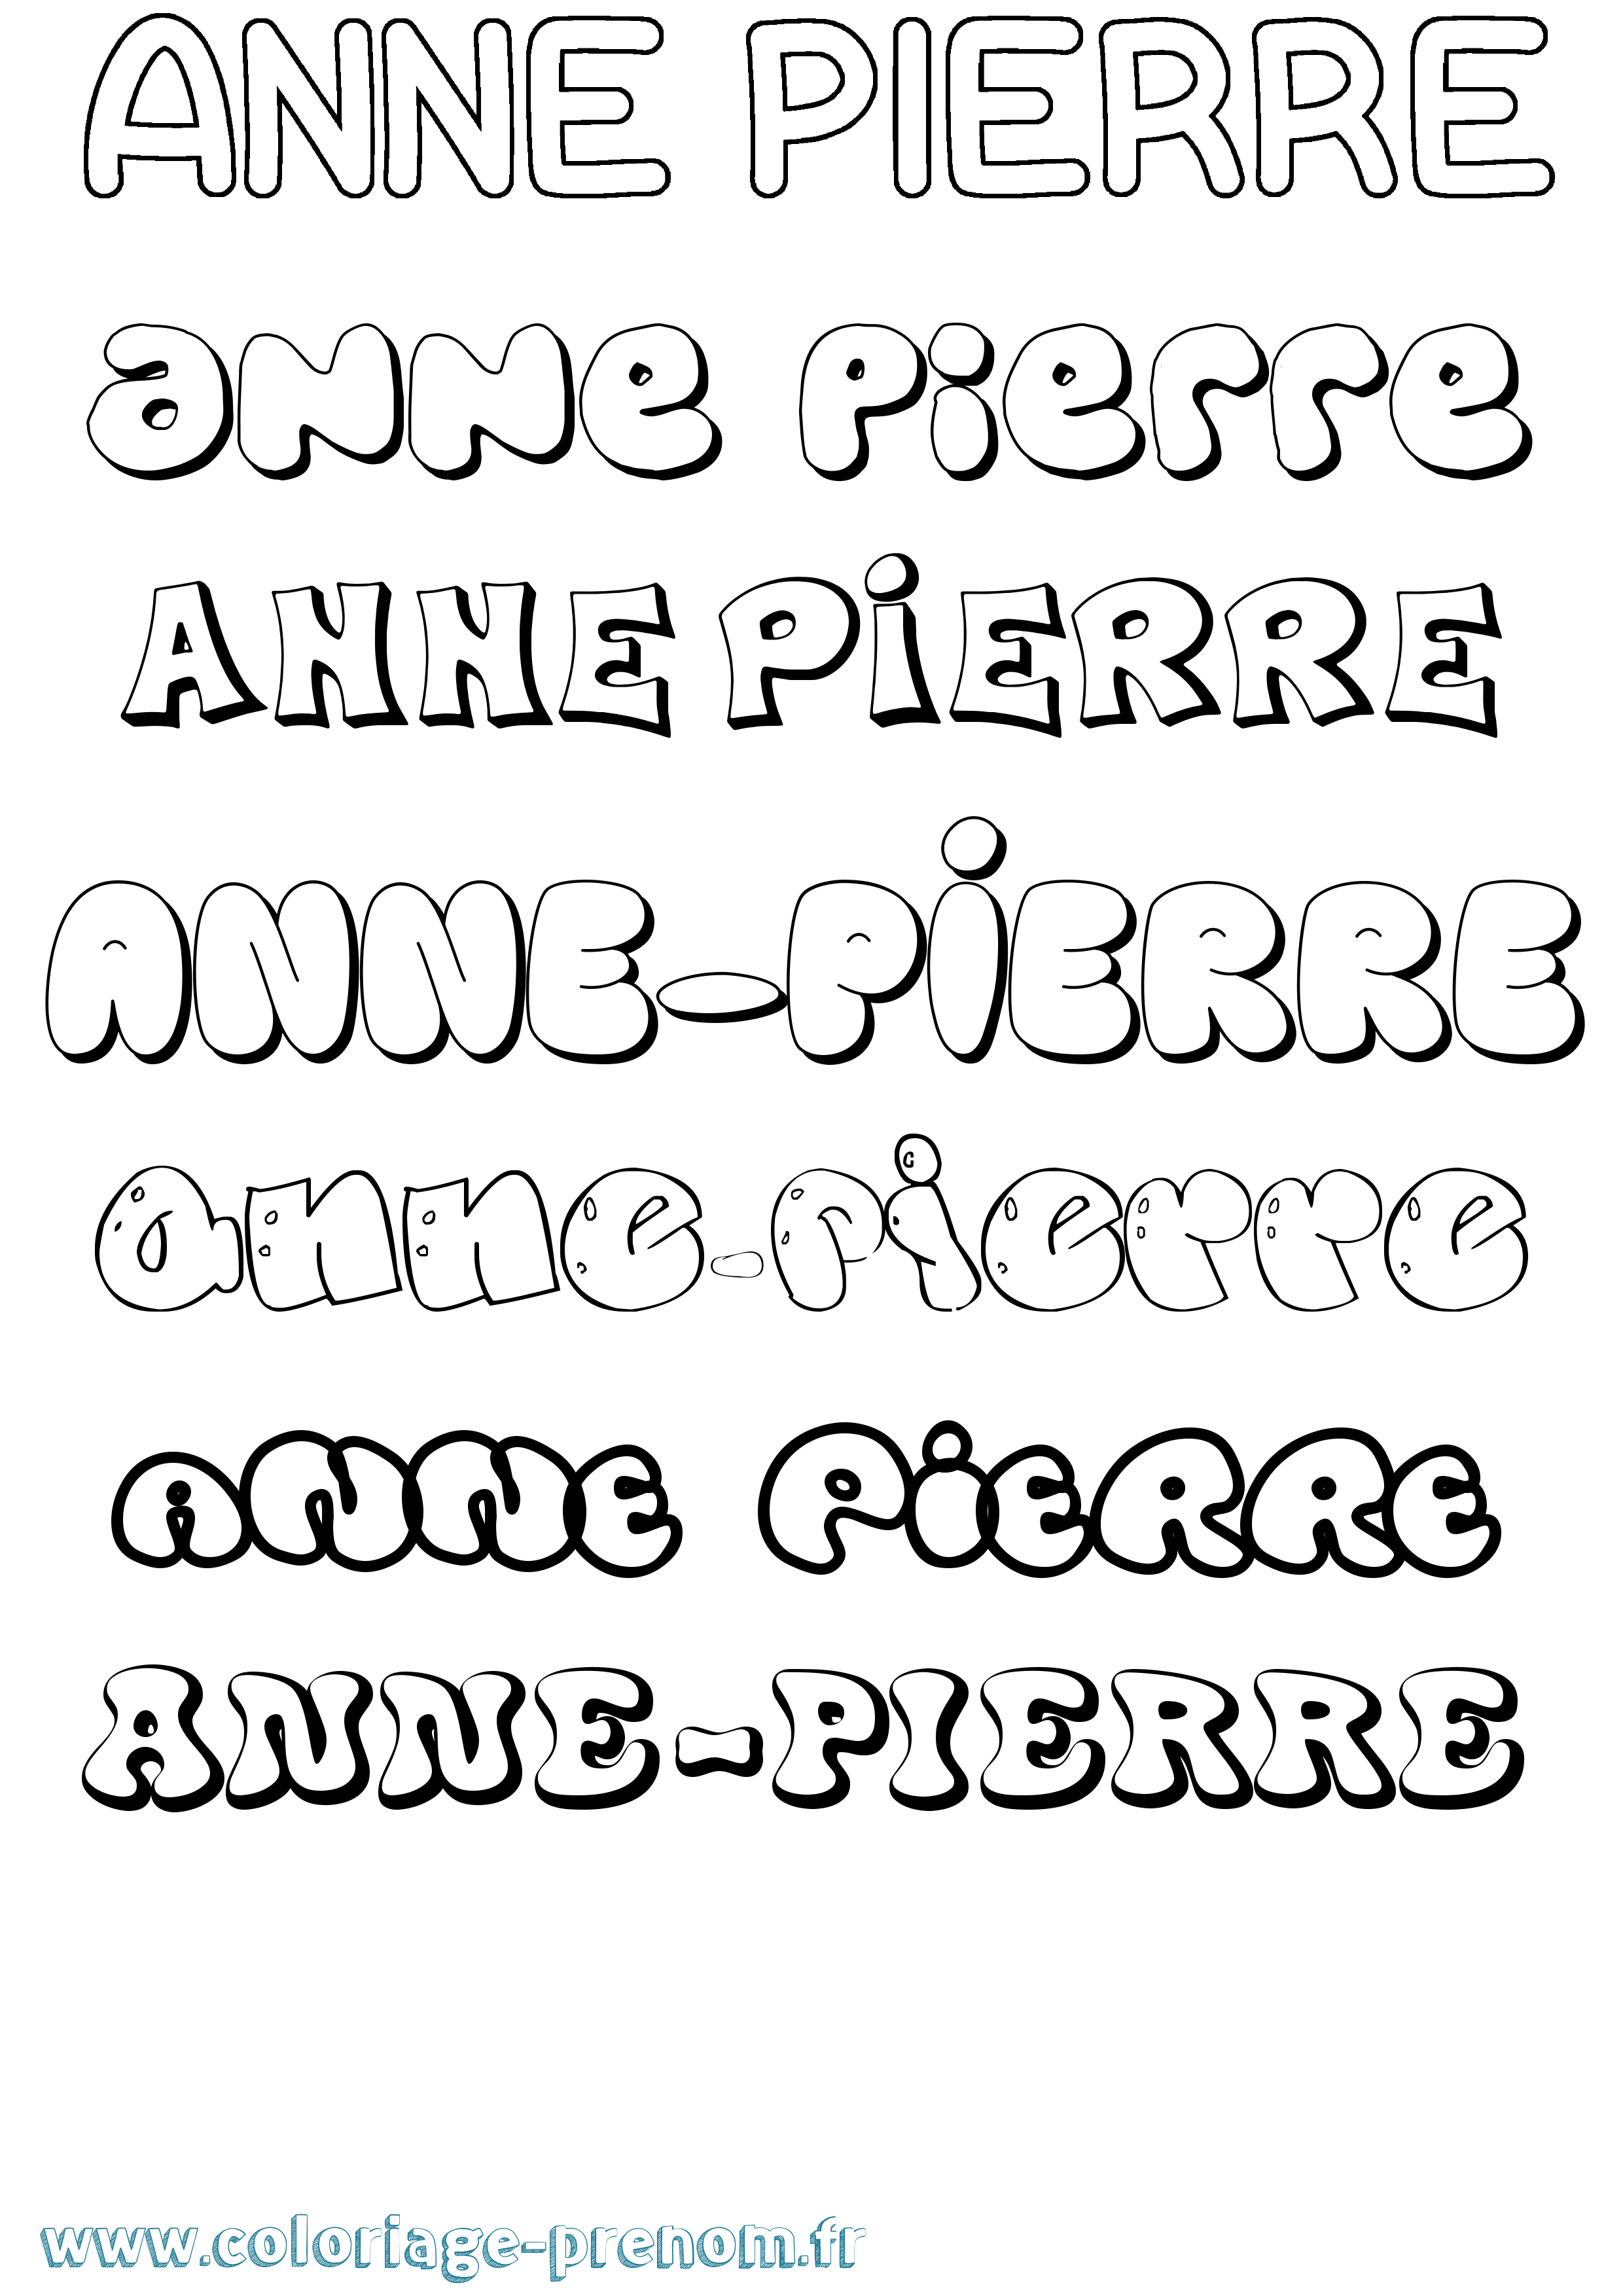 Coloriage prénom Anne-Pierre Bubble